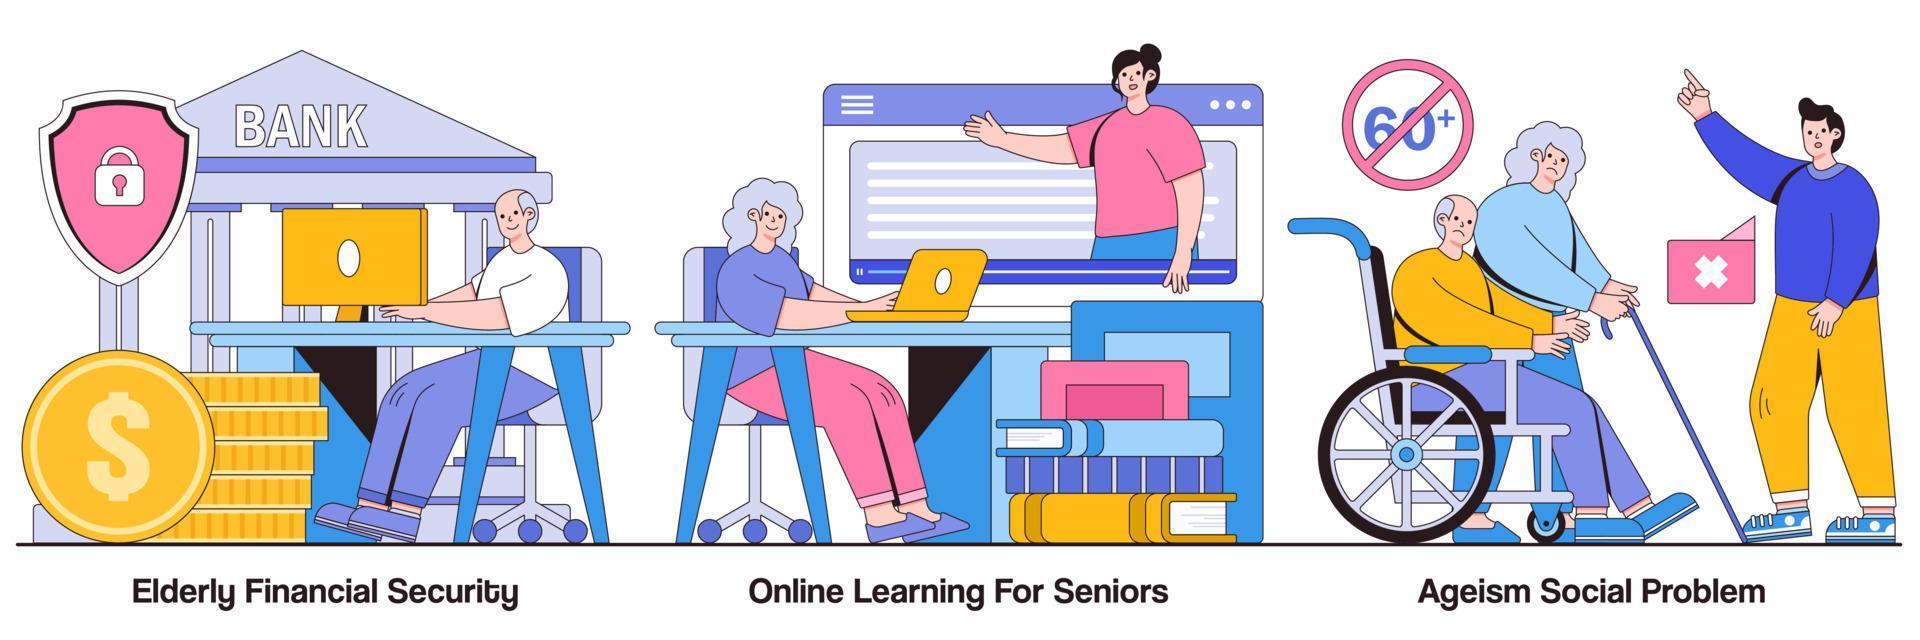 seguridad financiera para personas mayores, aprendizaje en línea para personas mayores y paquete ilustrado de problemas sociales de edad vector